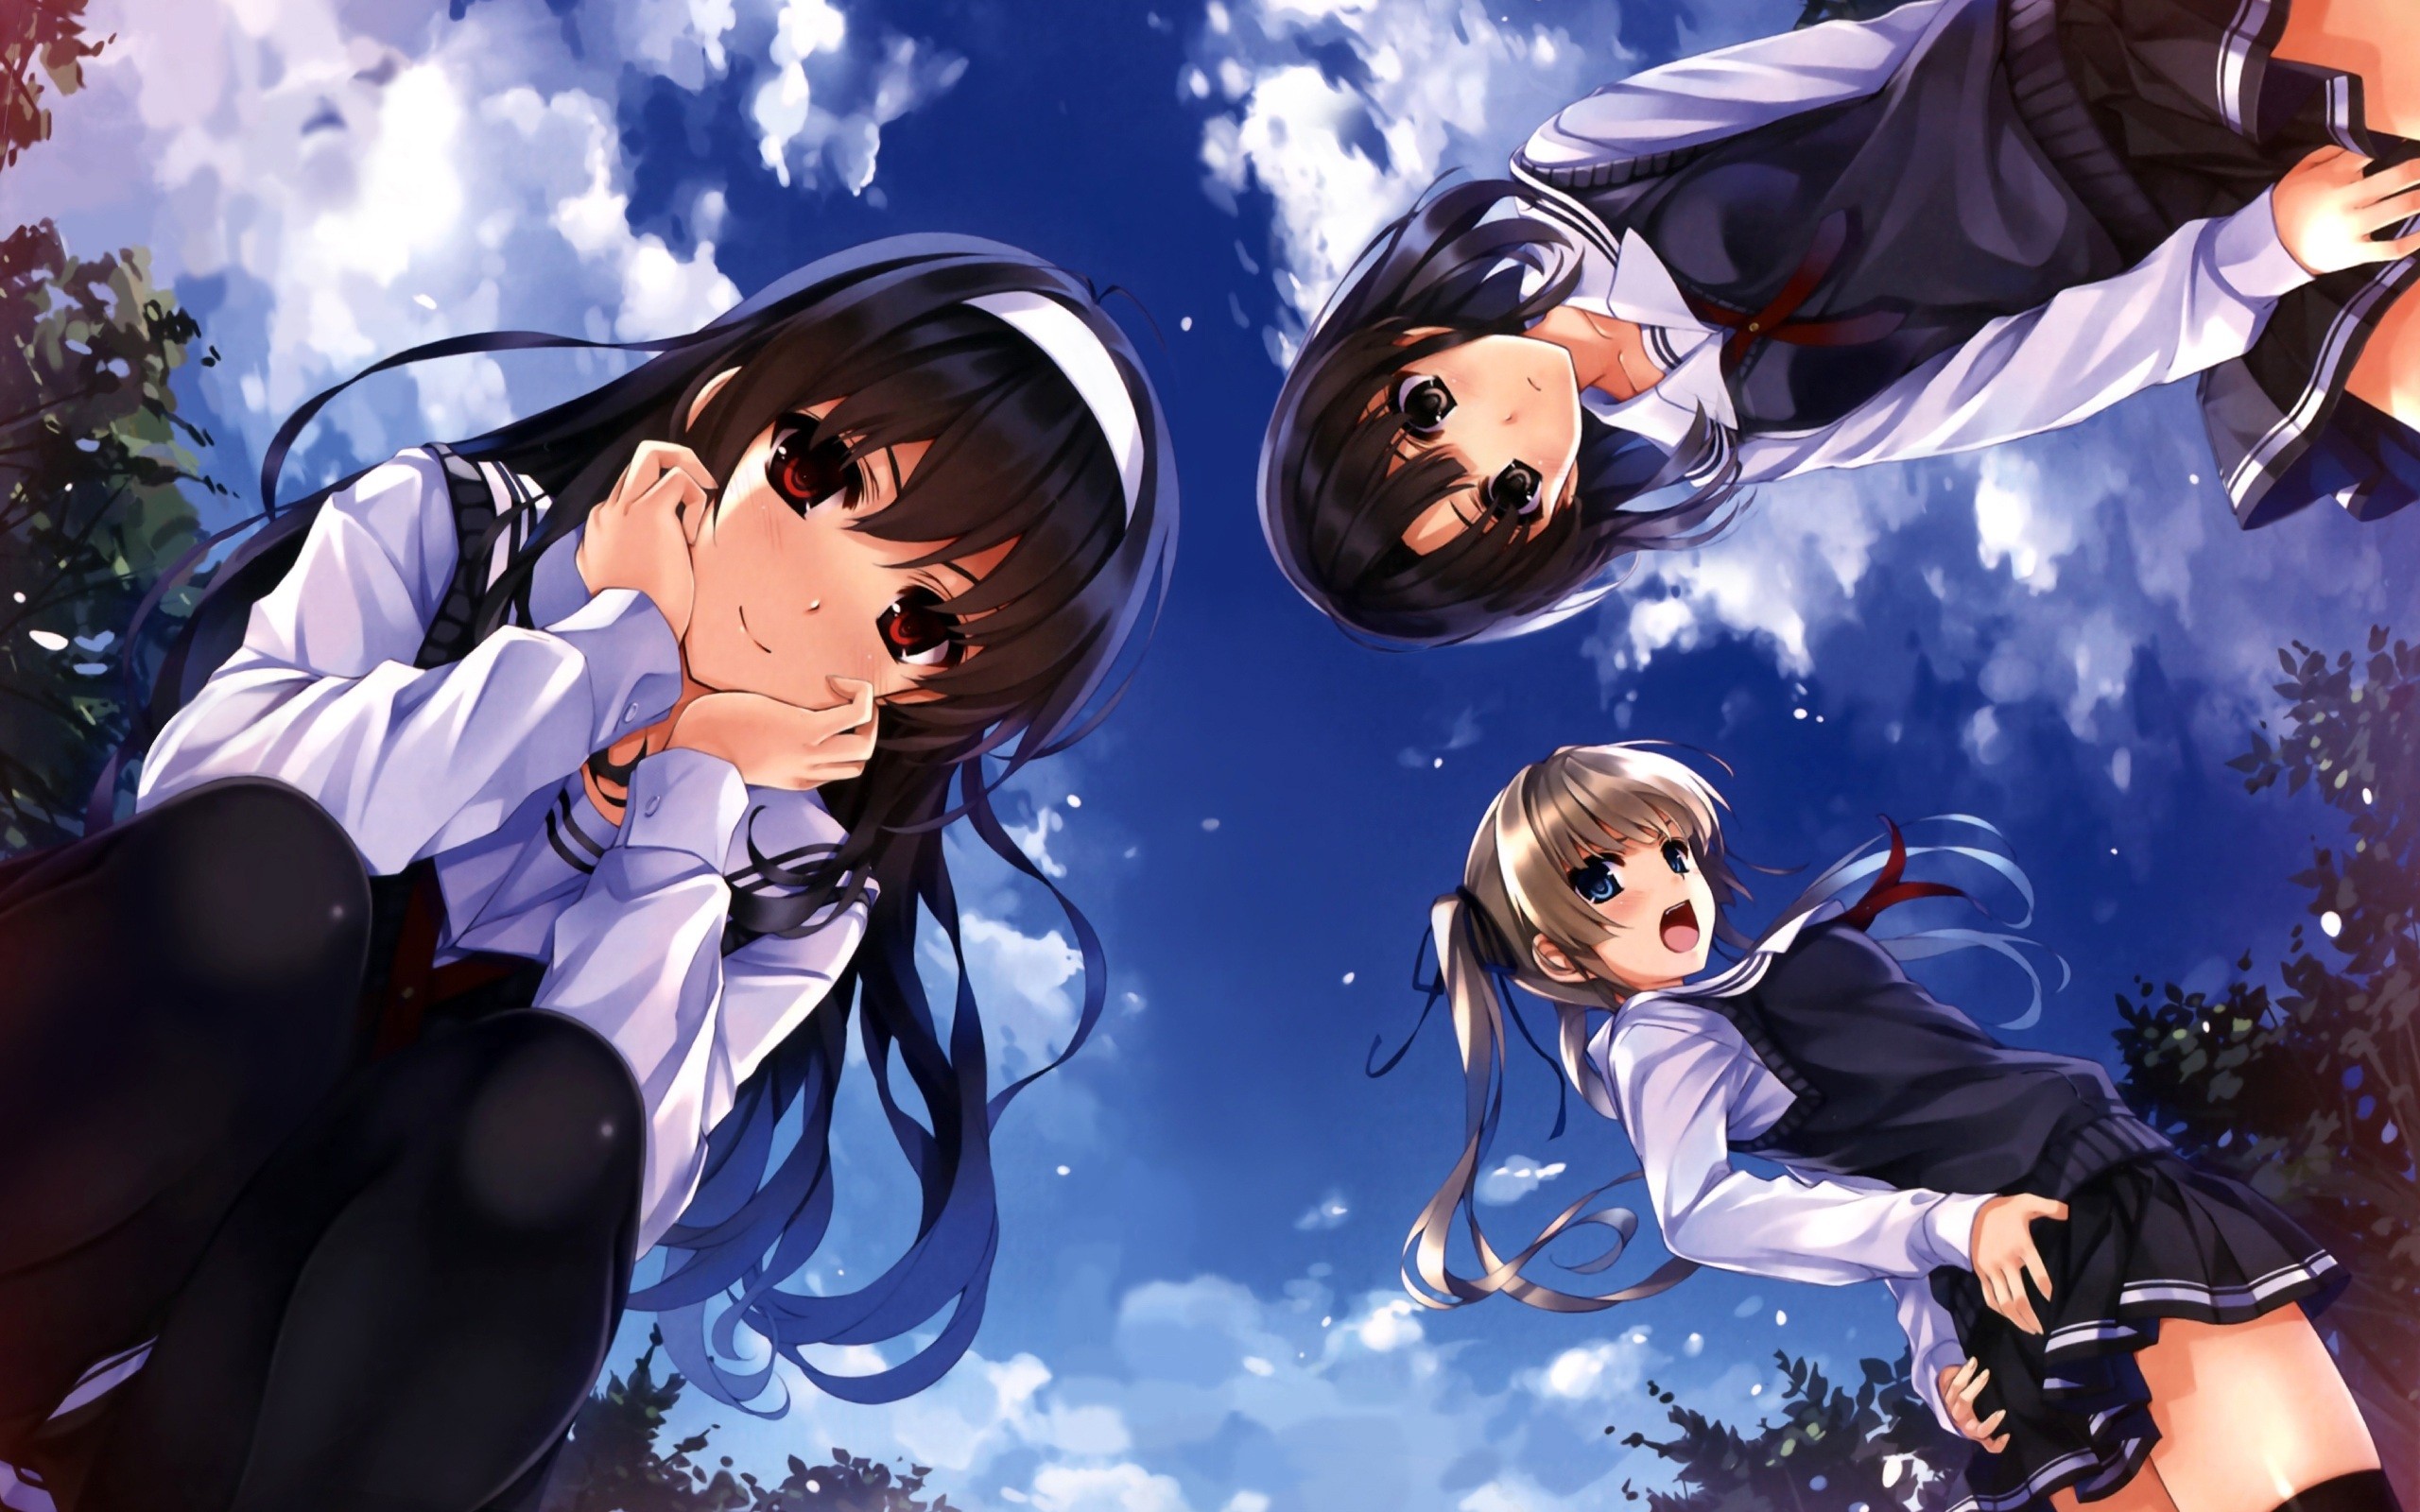 Anime Girl Wallpapers High Resolution | PixelsTalk.Net